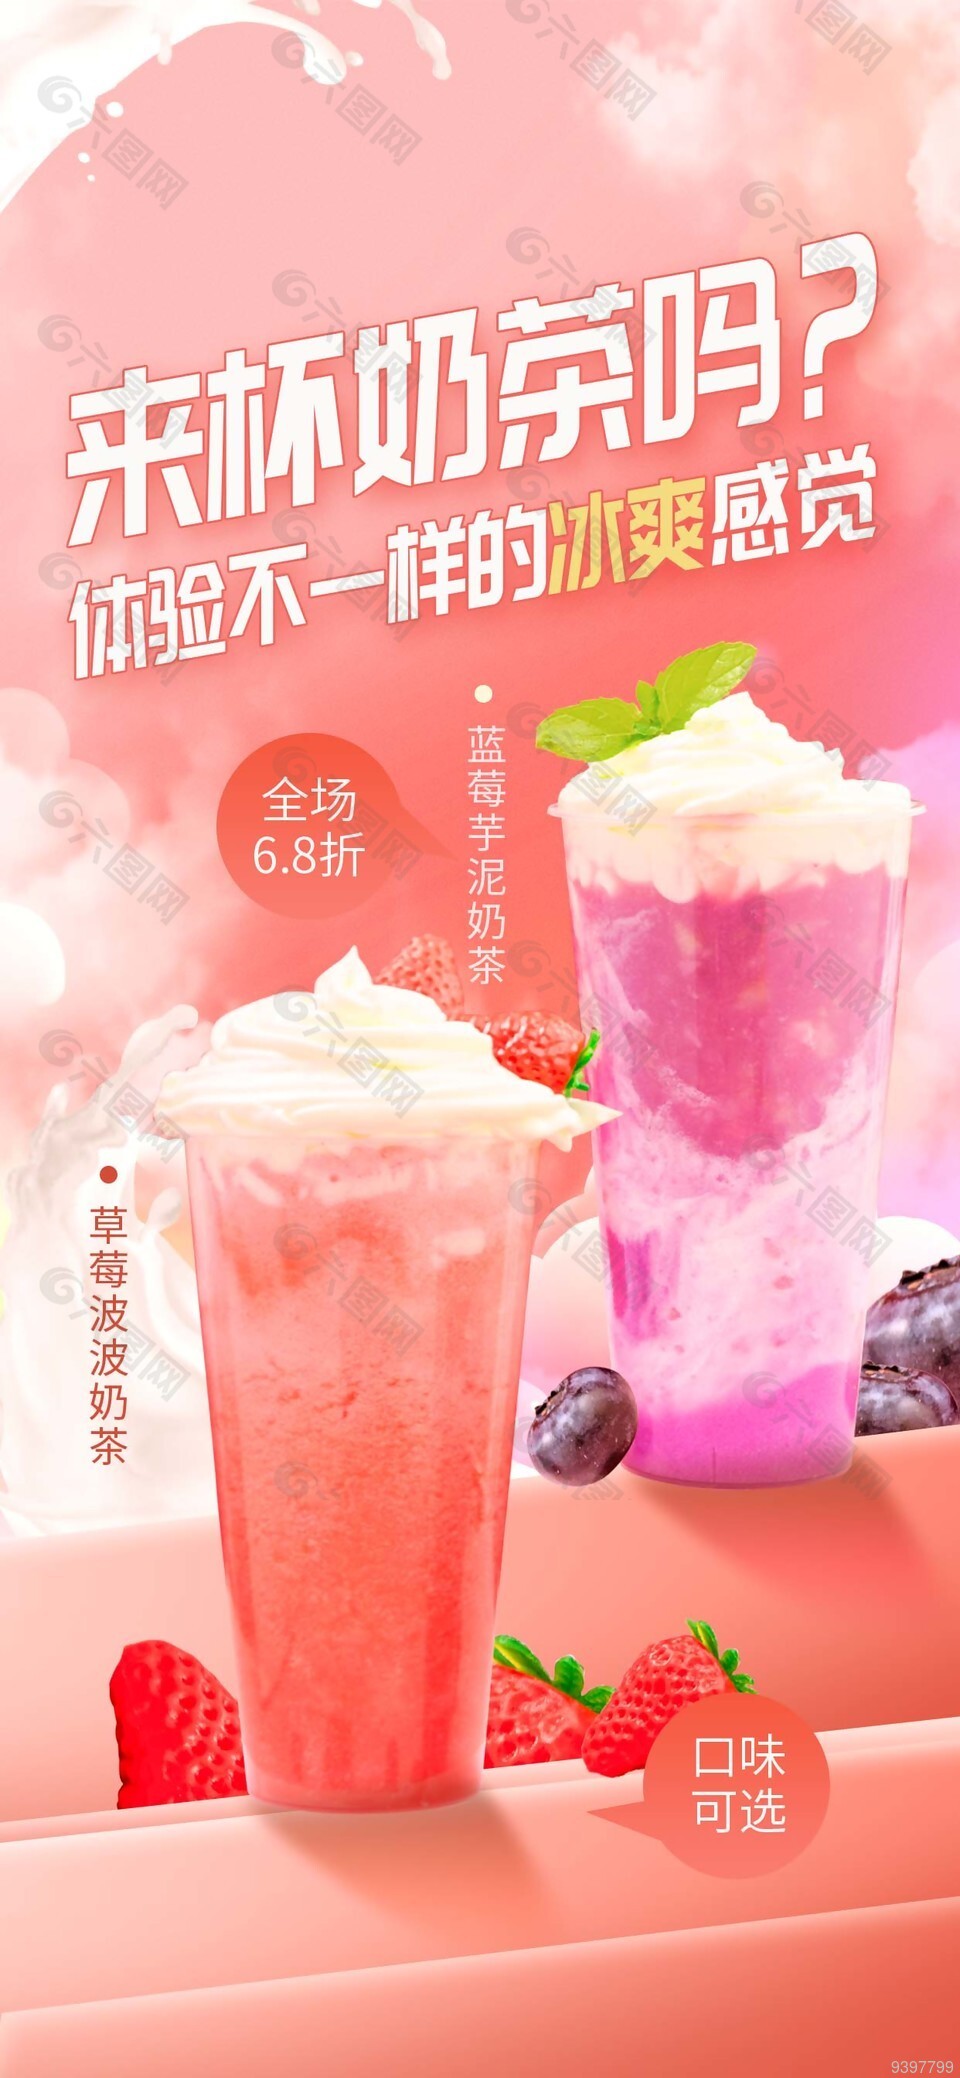 粉色背景奶茶促销活动海报设计